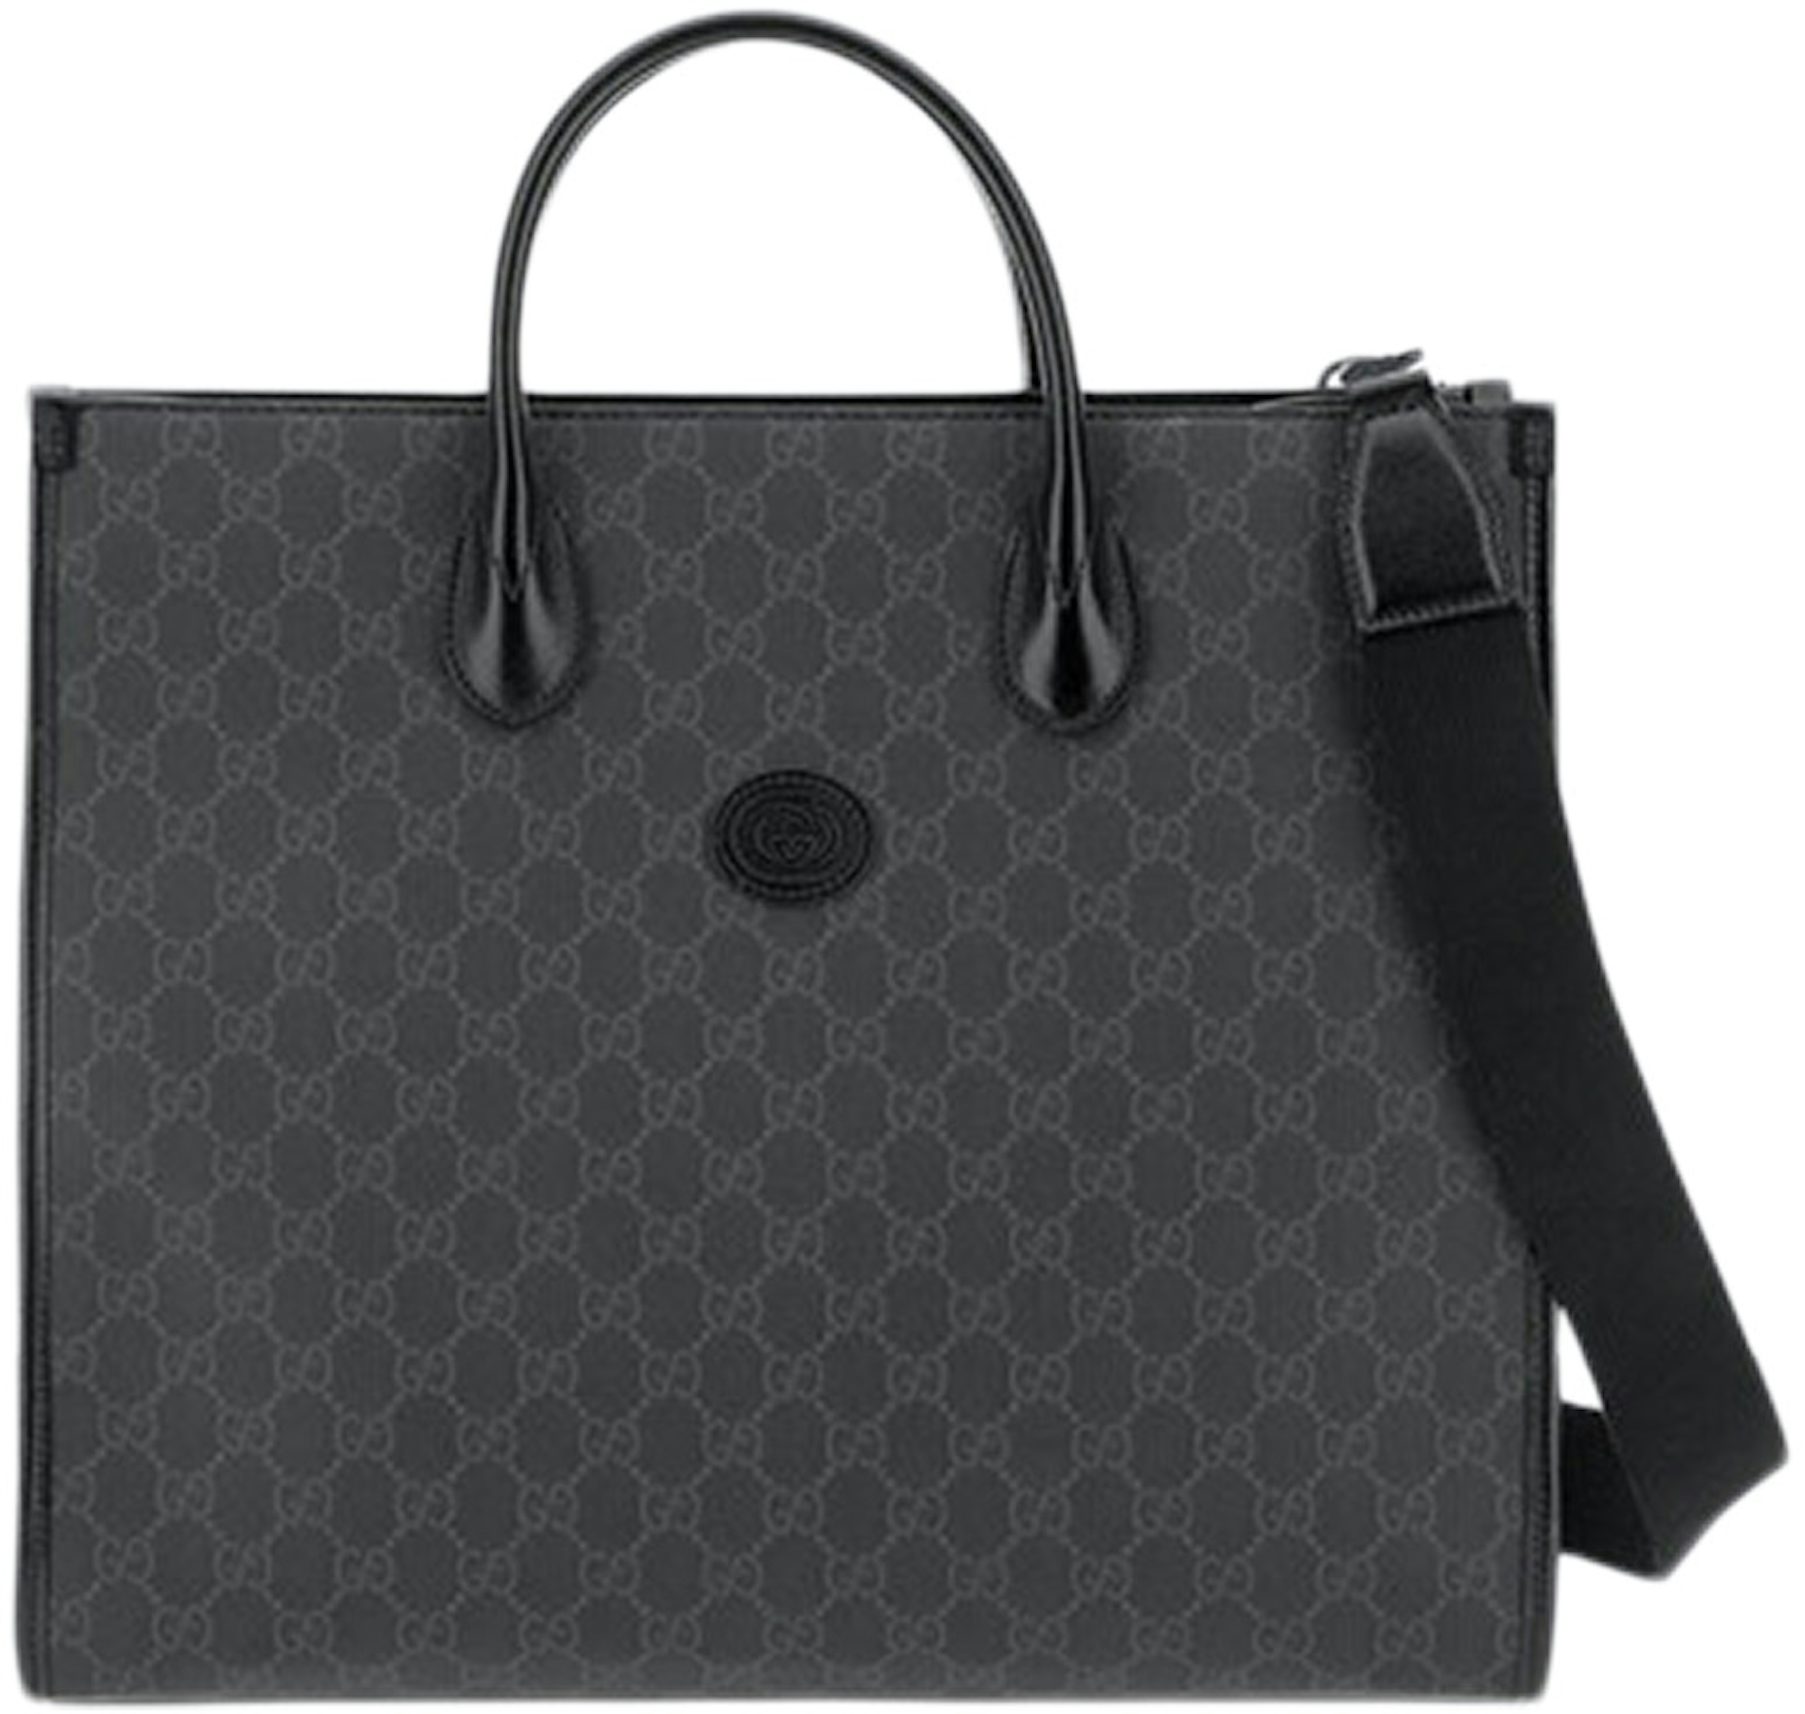 Gucci GG Supreme Medium Tote Bag